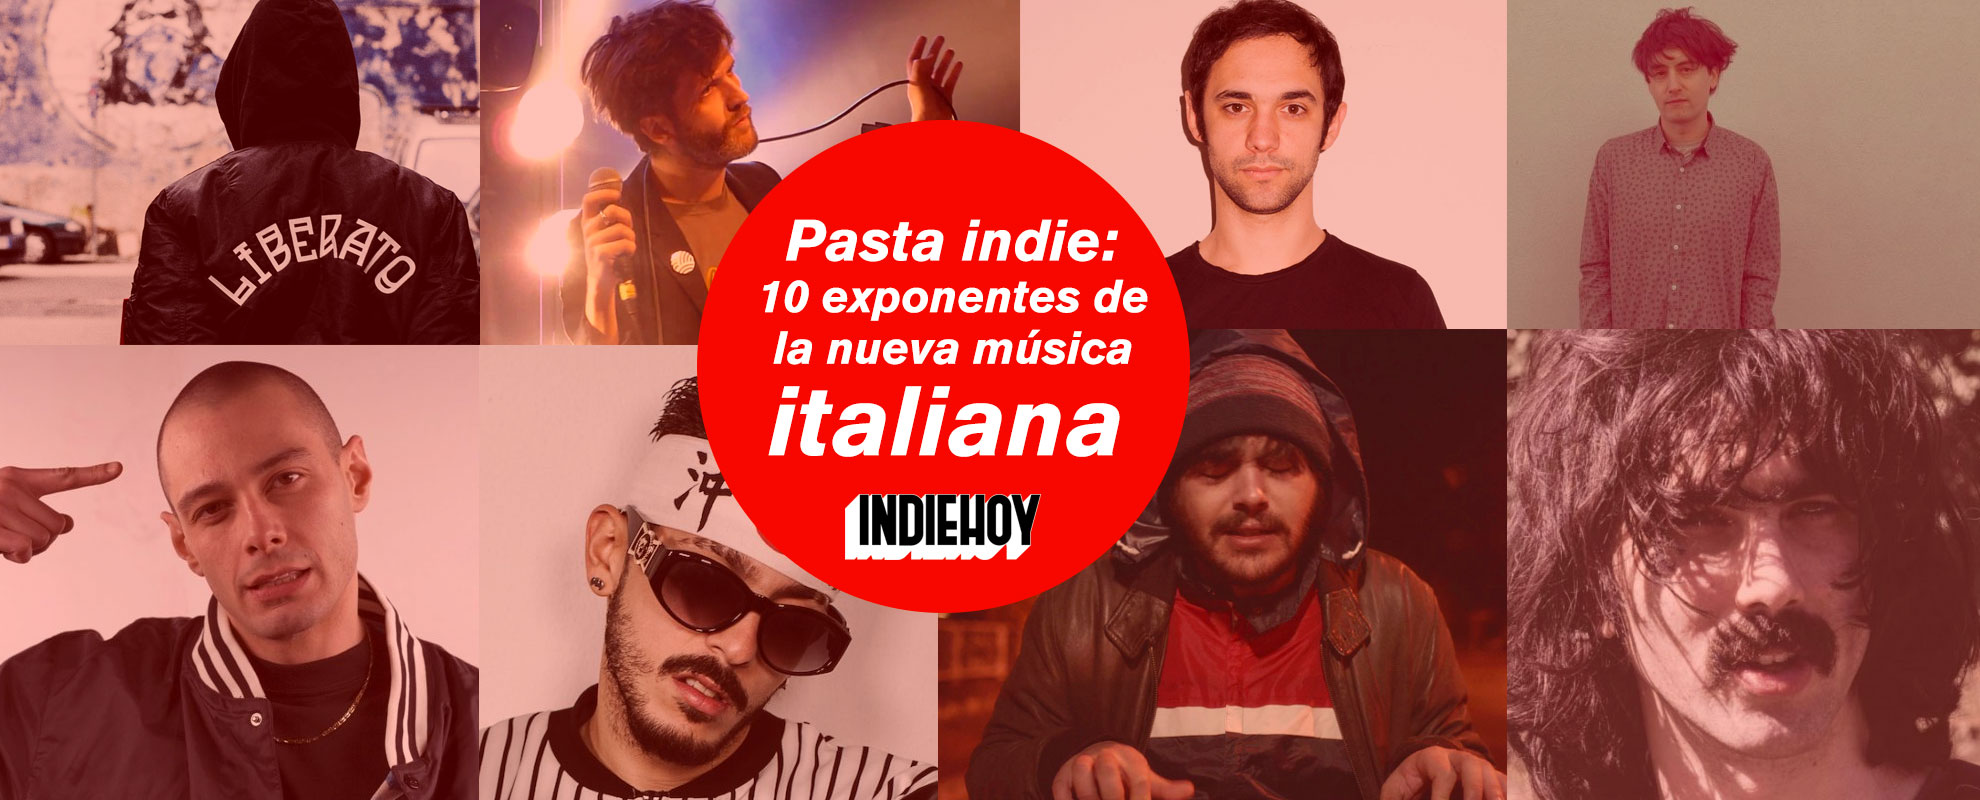 https://indiehoy.com/wp-content/uploads/2018/04/musica-de-italia-bandas-nuevas.jpg